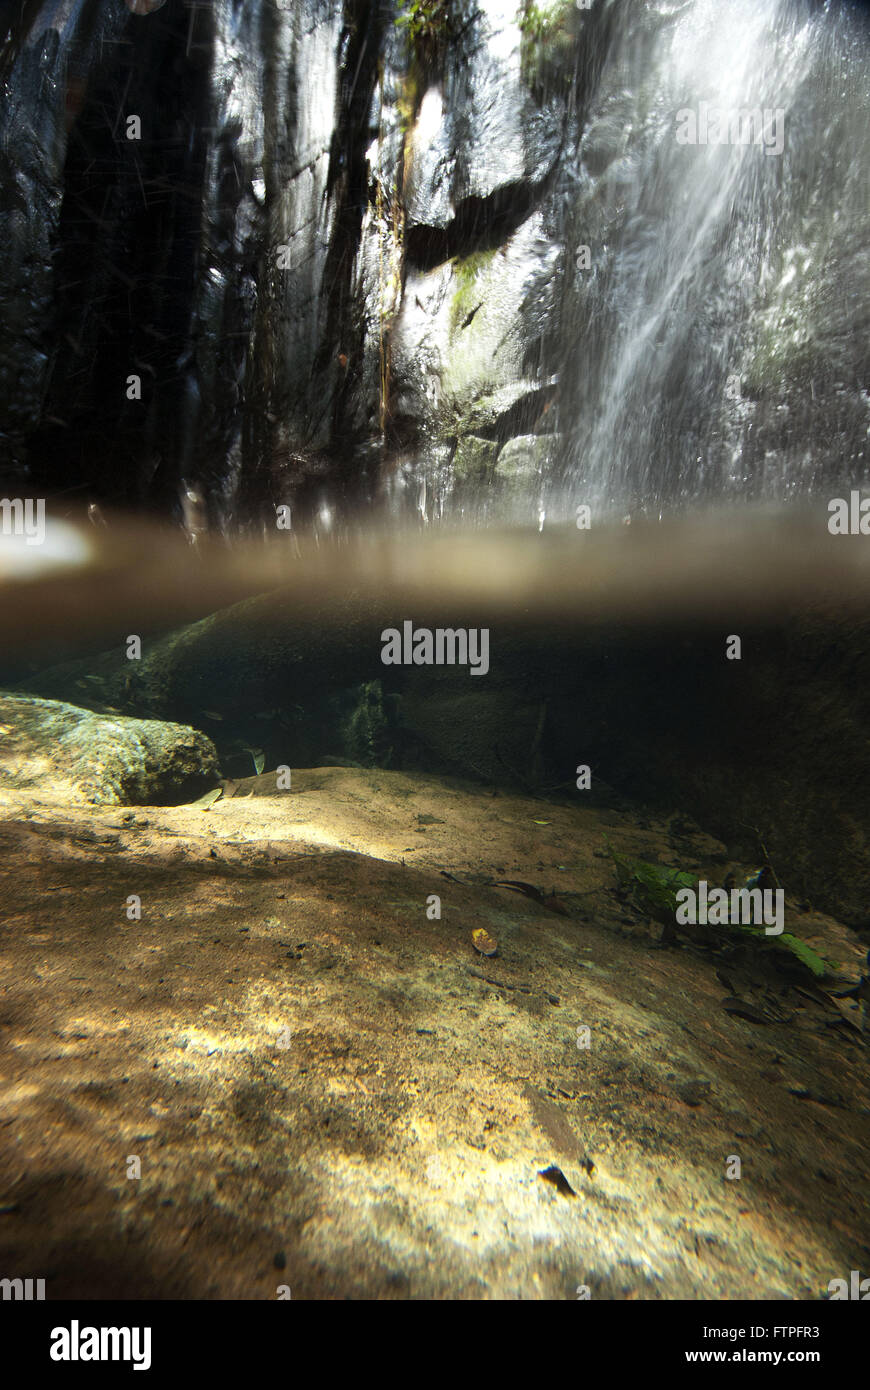 La cascata nel santuario ecologico di Pedra Caida Foto Stock